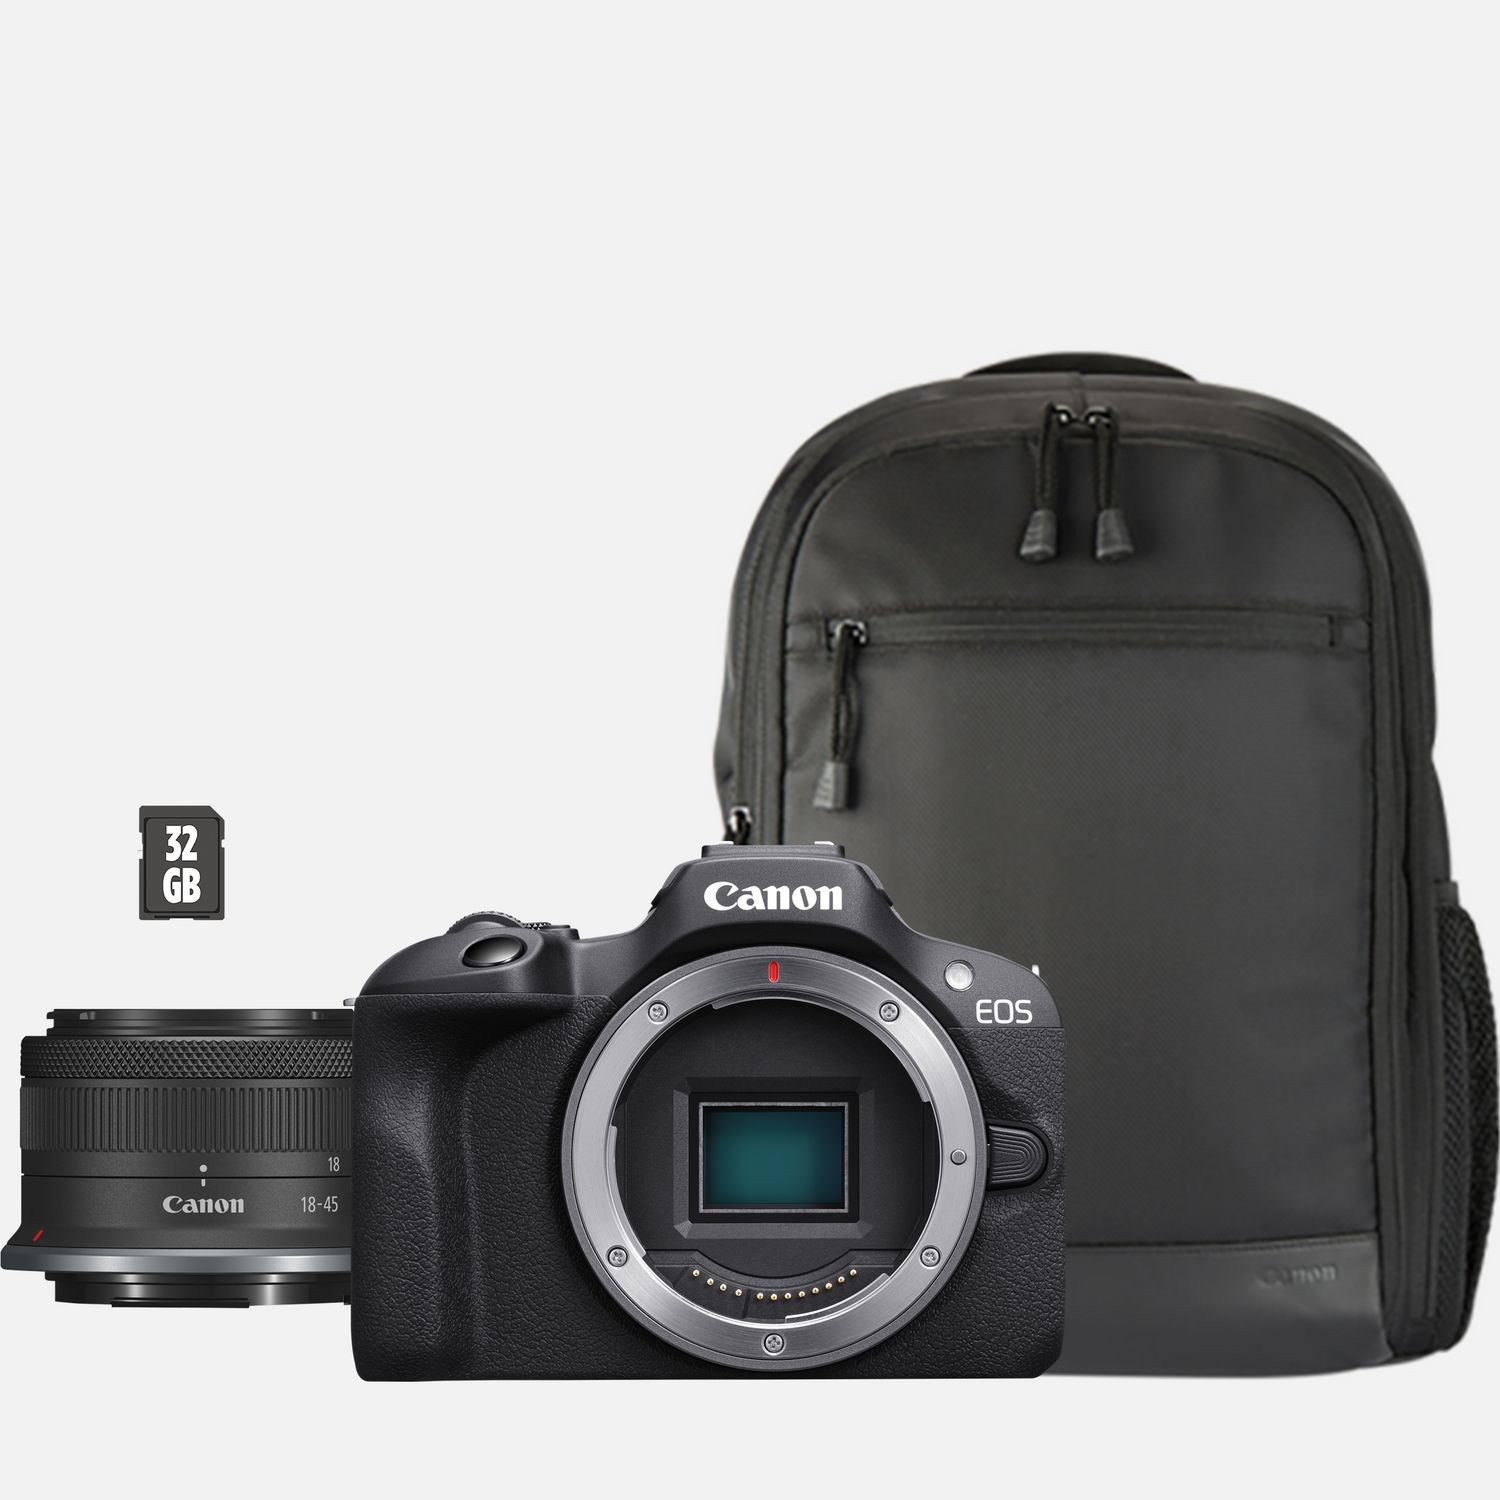 mochila para camara fotografica buen espacio bolsa para accesorios